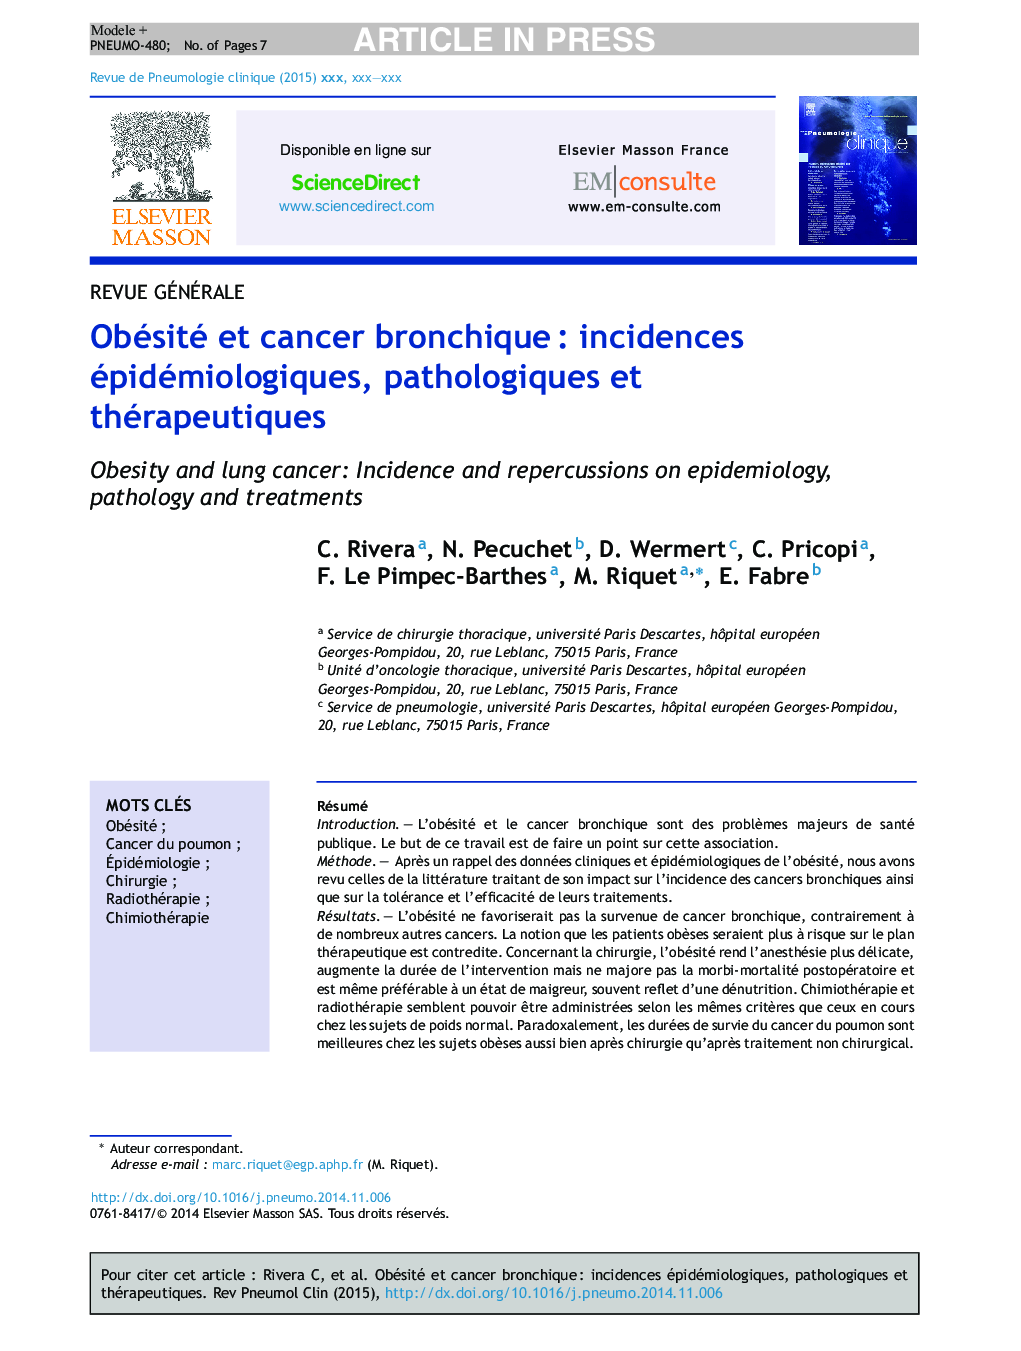 Obésité et cancer bronchiqueÂ : incidences épidémiologiques, pathologiques et thérapeutiques